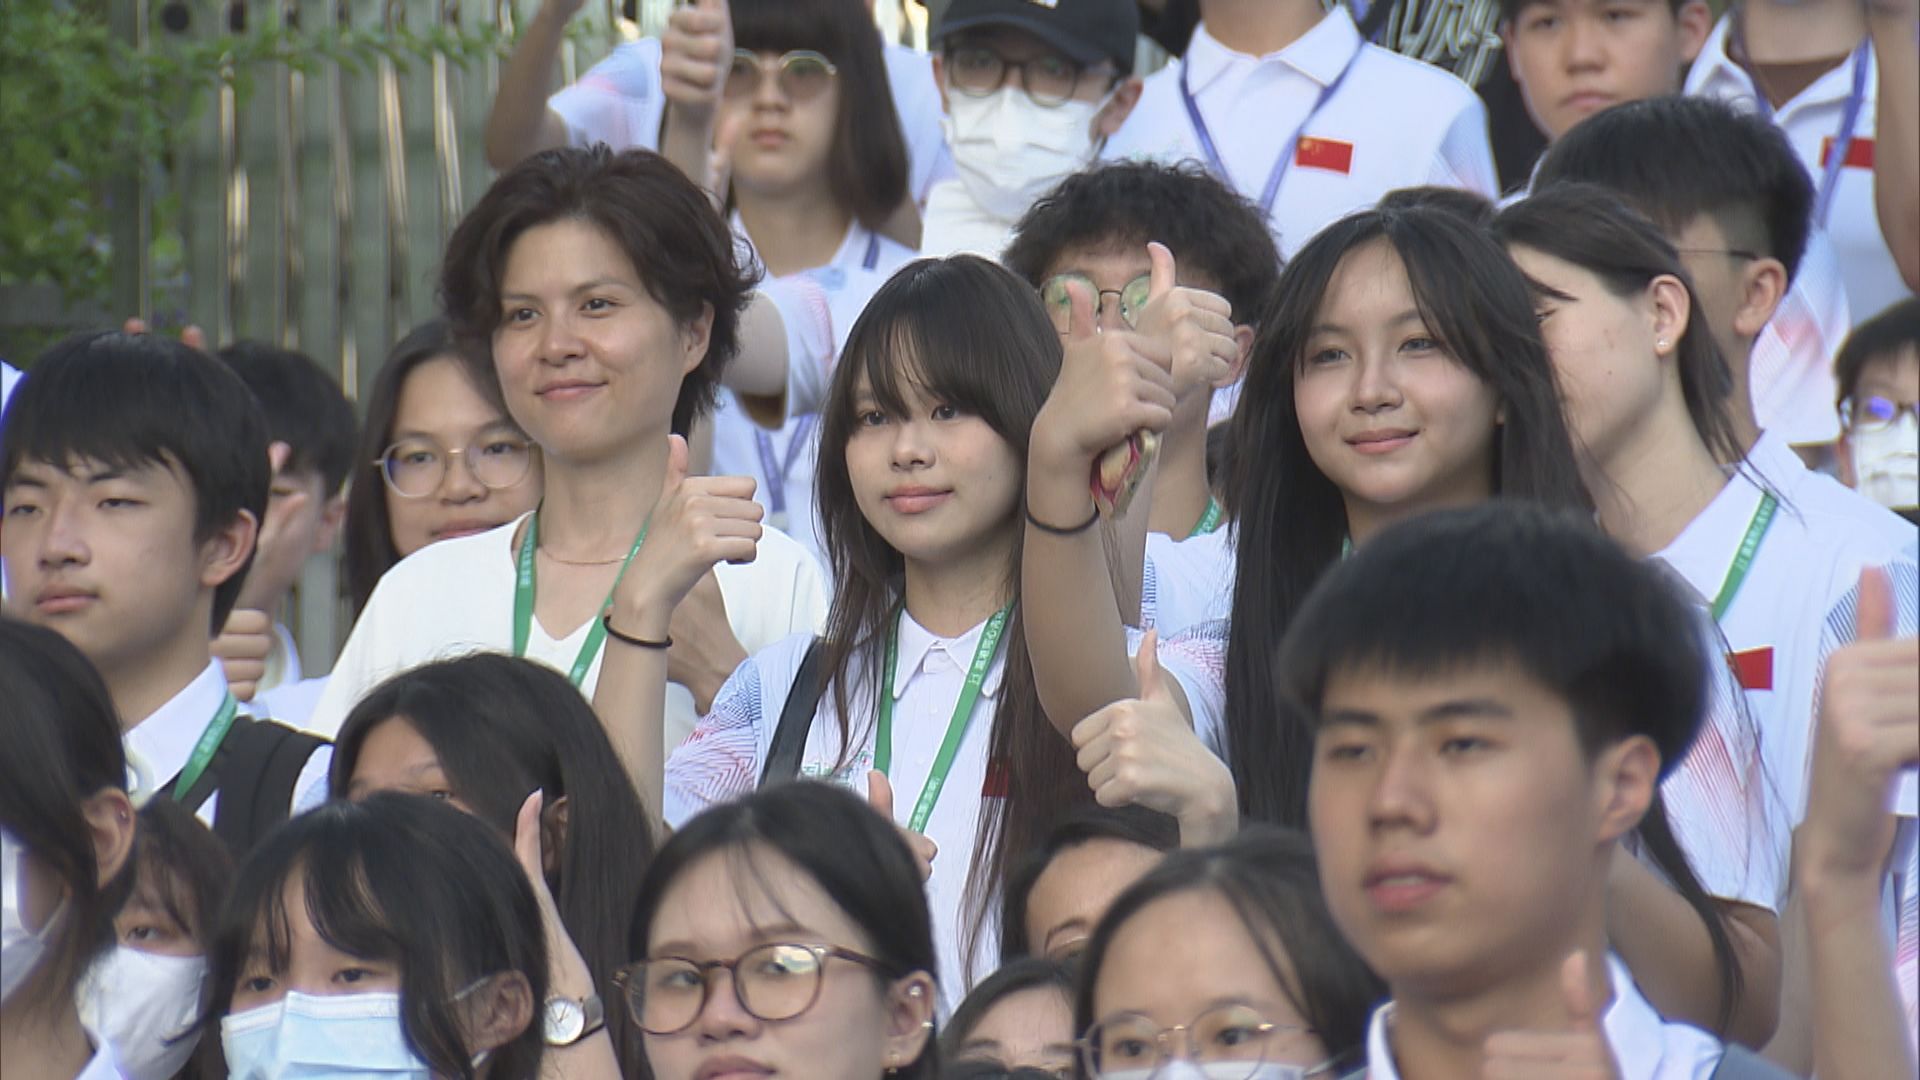 400多位中學師生坐高鐵動臥列車到上海交流 